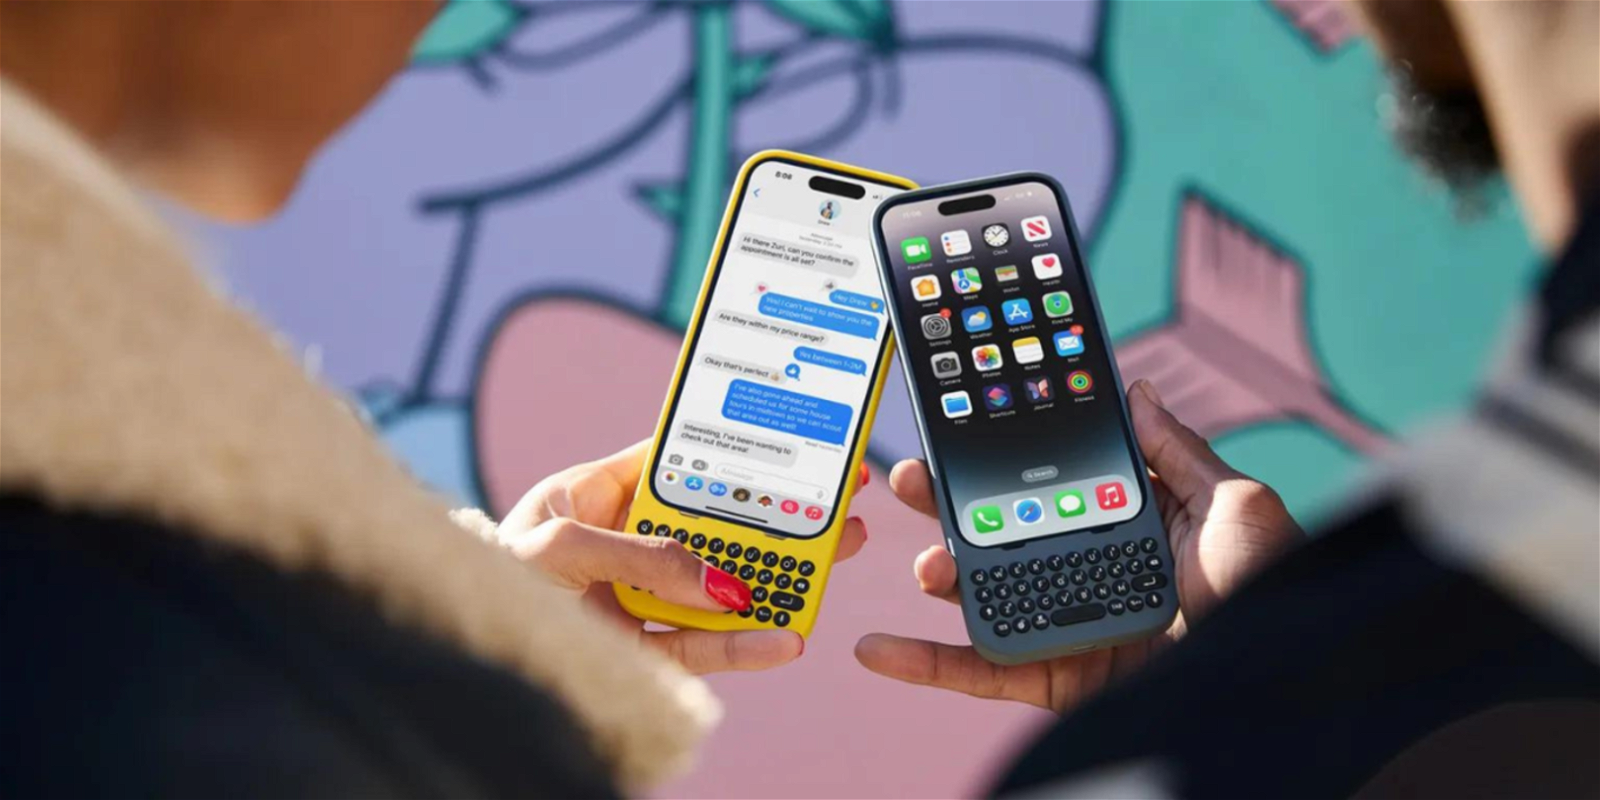 Manos sostienen dos iPhone co funda con teclado físico en amarillo y otra en gris